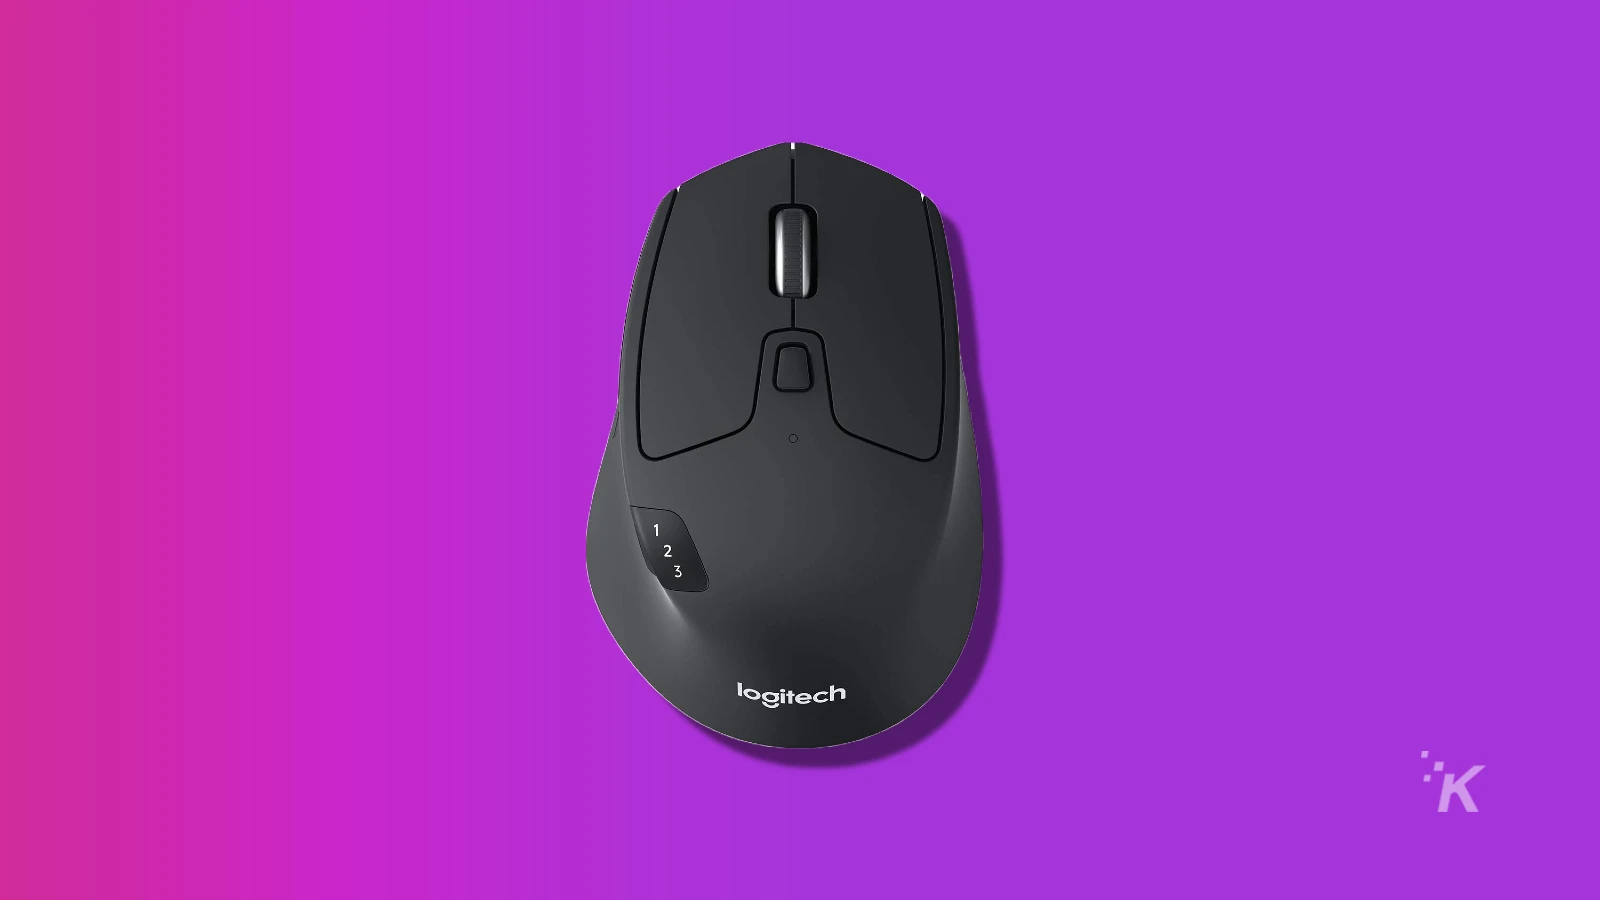 Logitech m720-Maus auf violettem Hintergrund